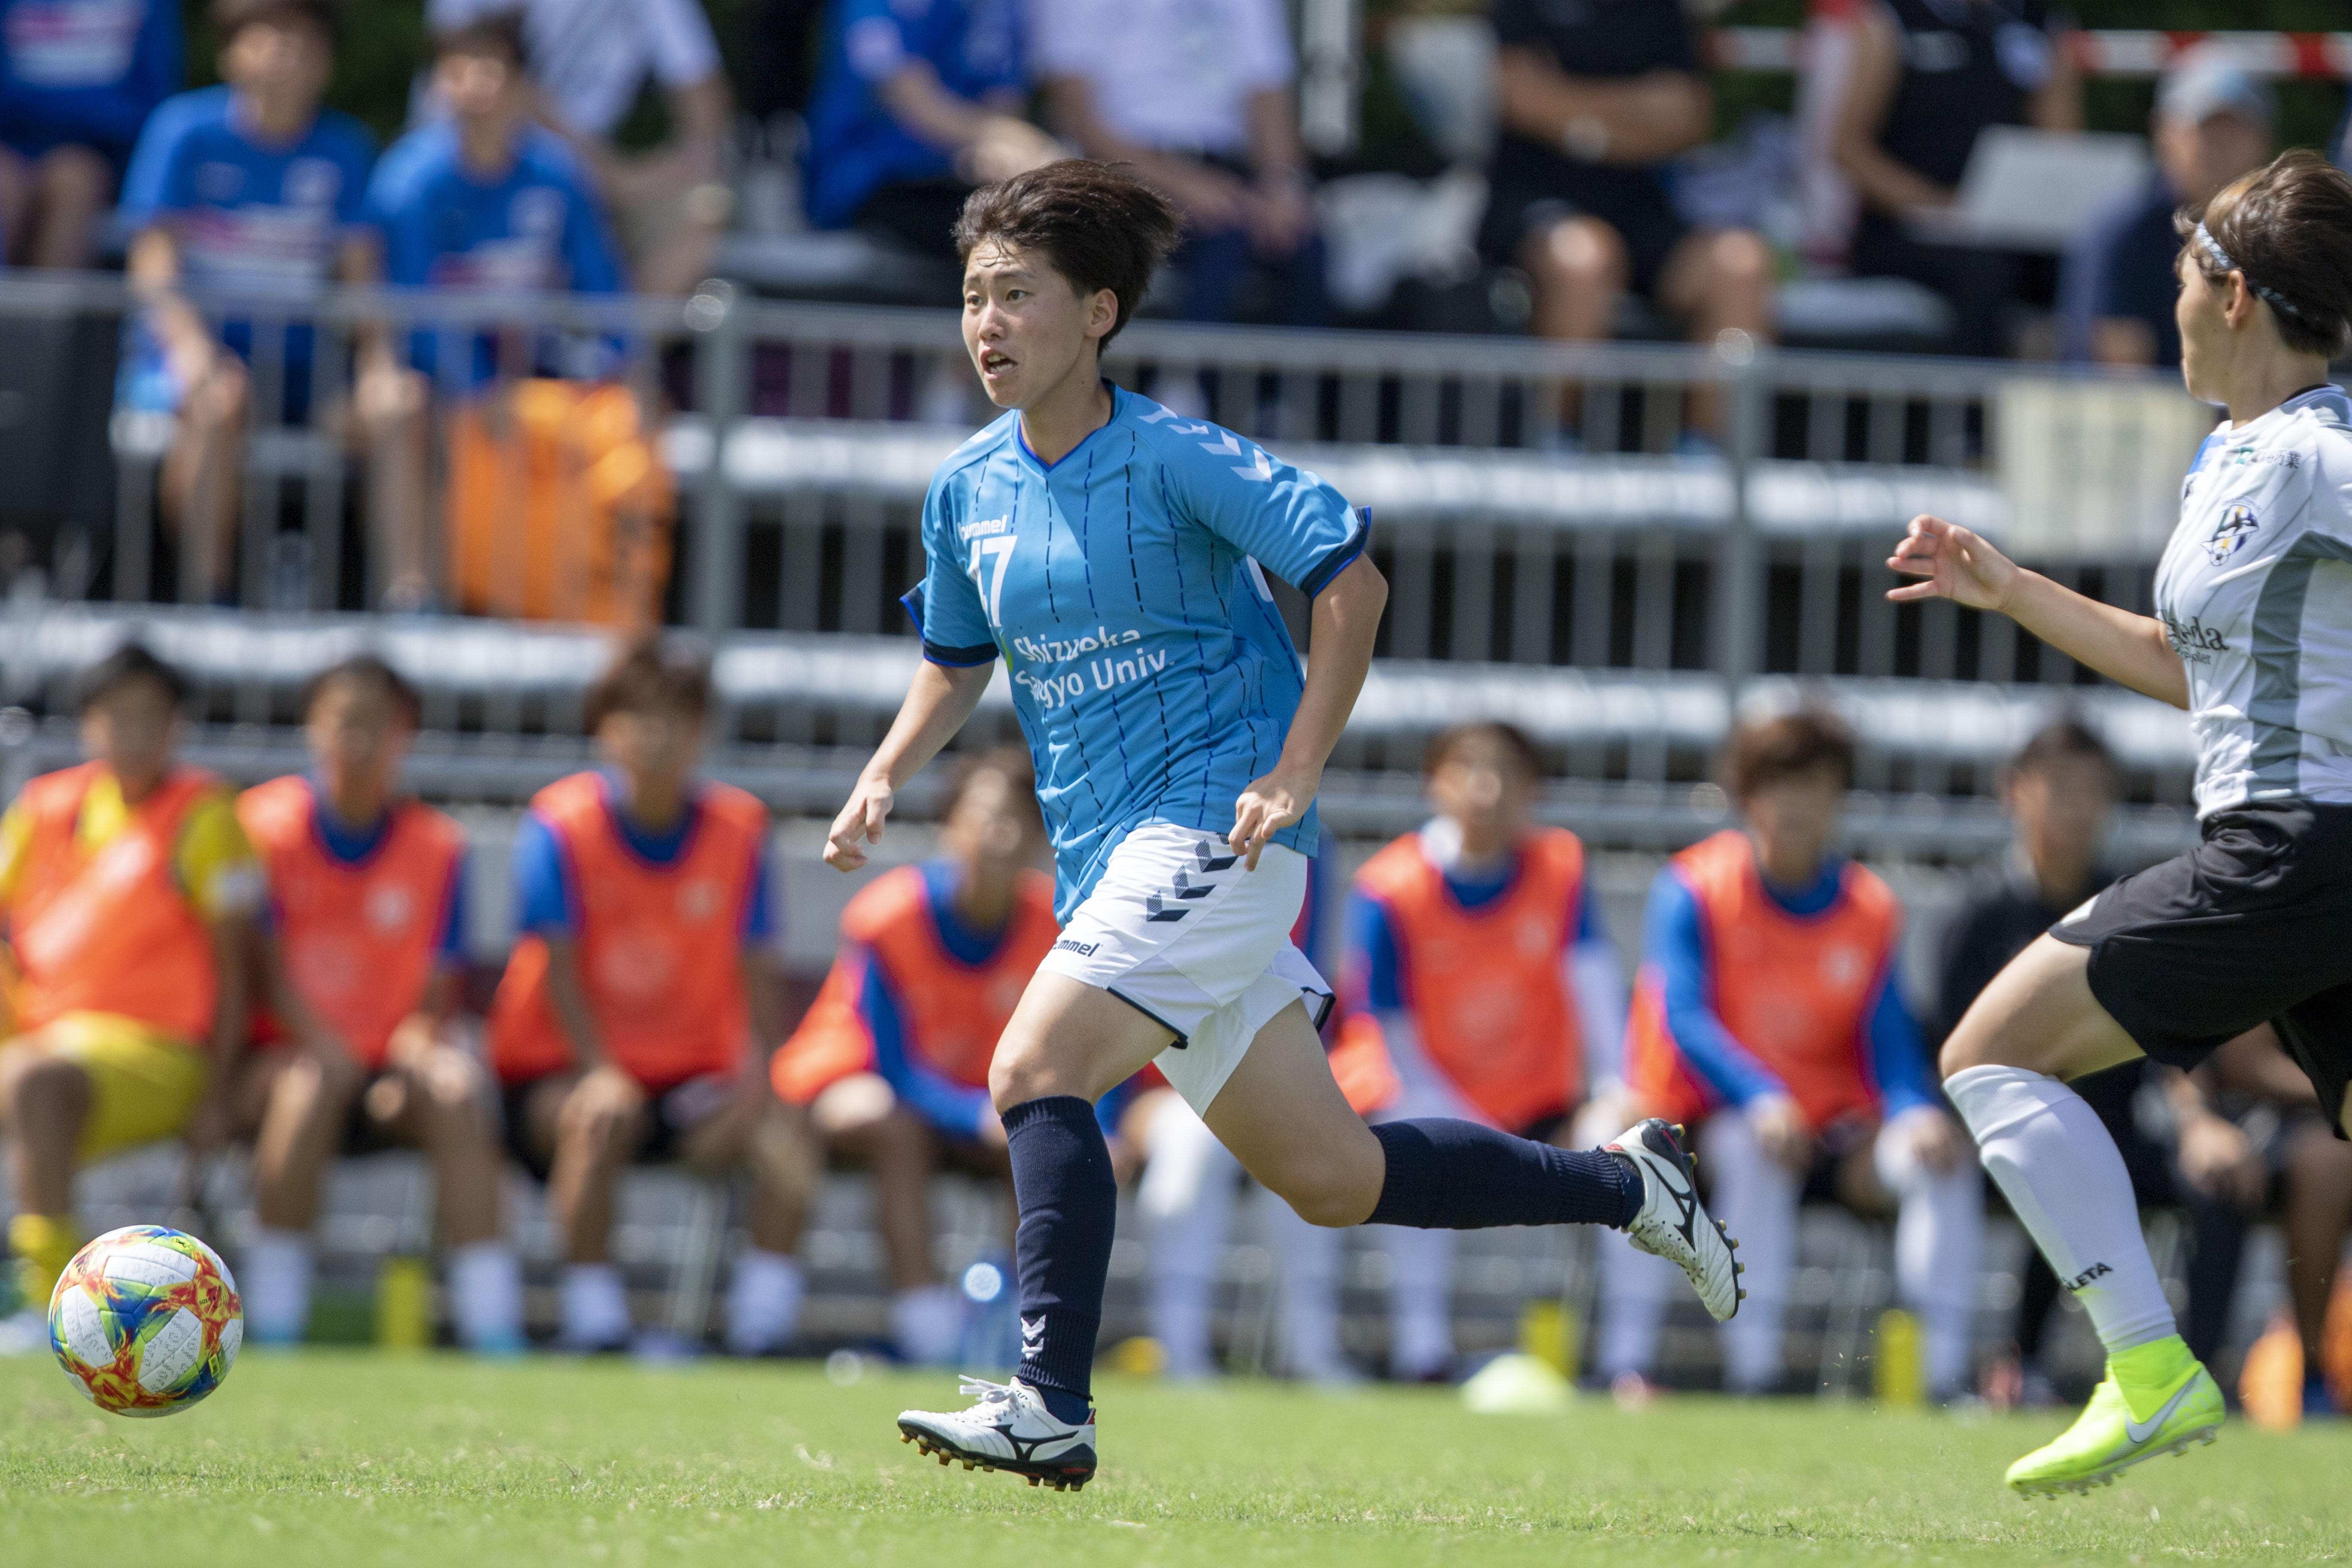 島村友妃子選手退団 移籍のお知らせ Bonita新着情報 静岡産業大学サッカー部 Shizuoka Sangyo University Football Clubの公式ホームページです